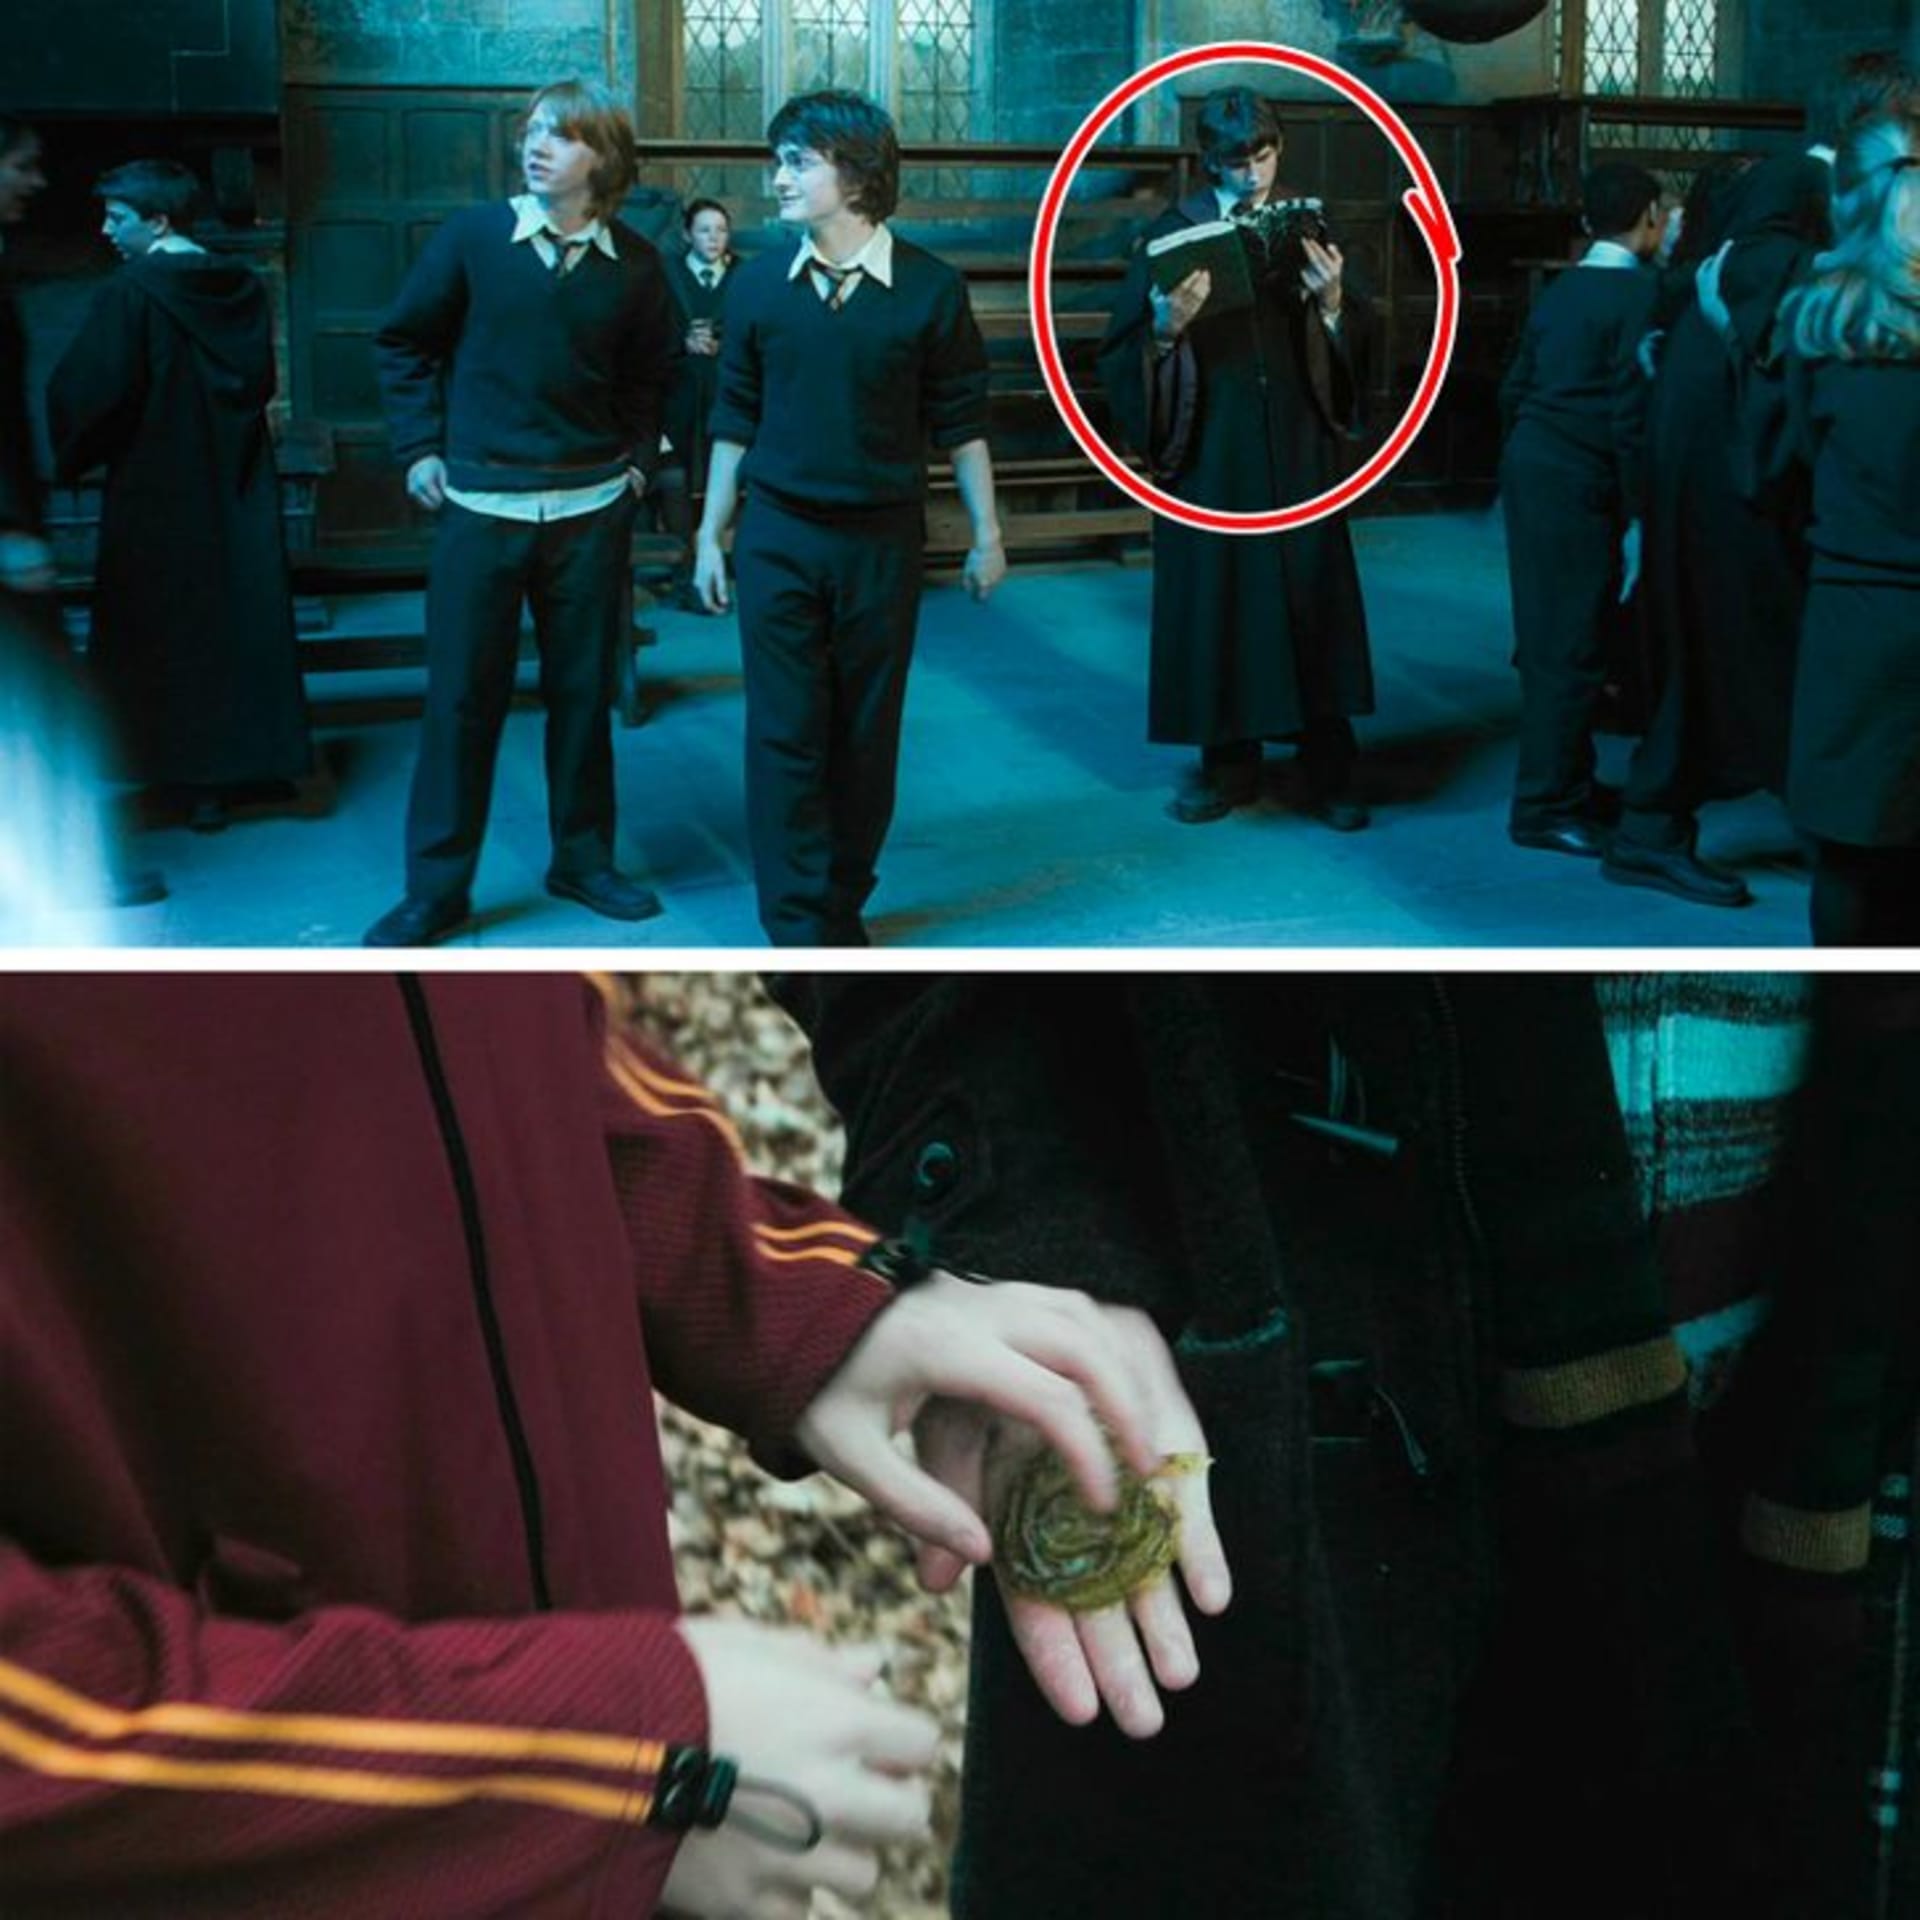 Když studenti házejí svá jména do Ohnivého poháru, Neville si opodál čte knihu Kouzelné rostliny skotských jezer, díky které poté pomůže Harrymu při druhém úkolu